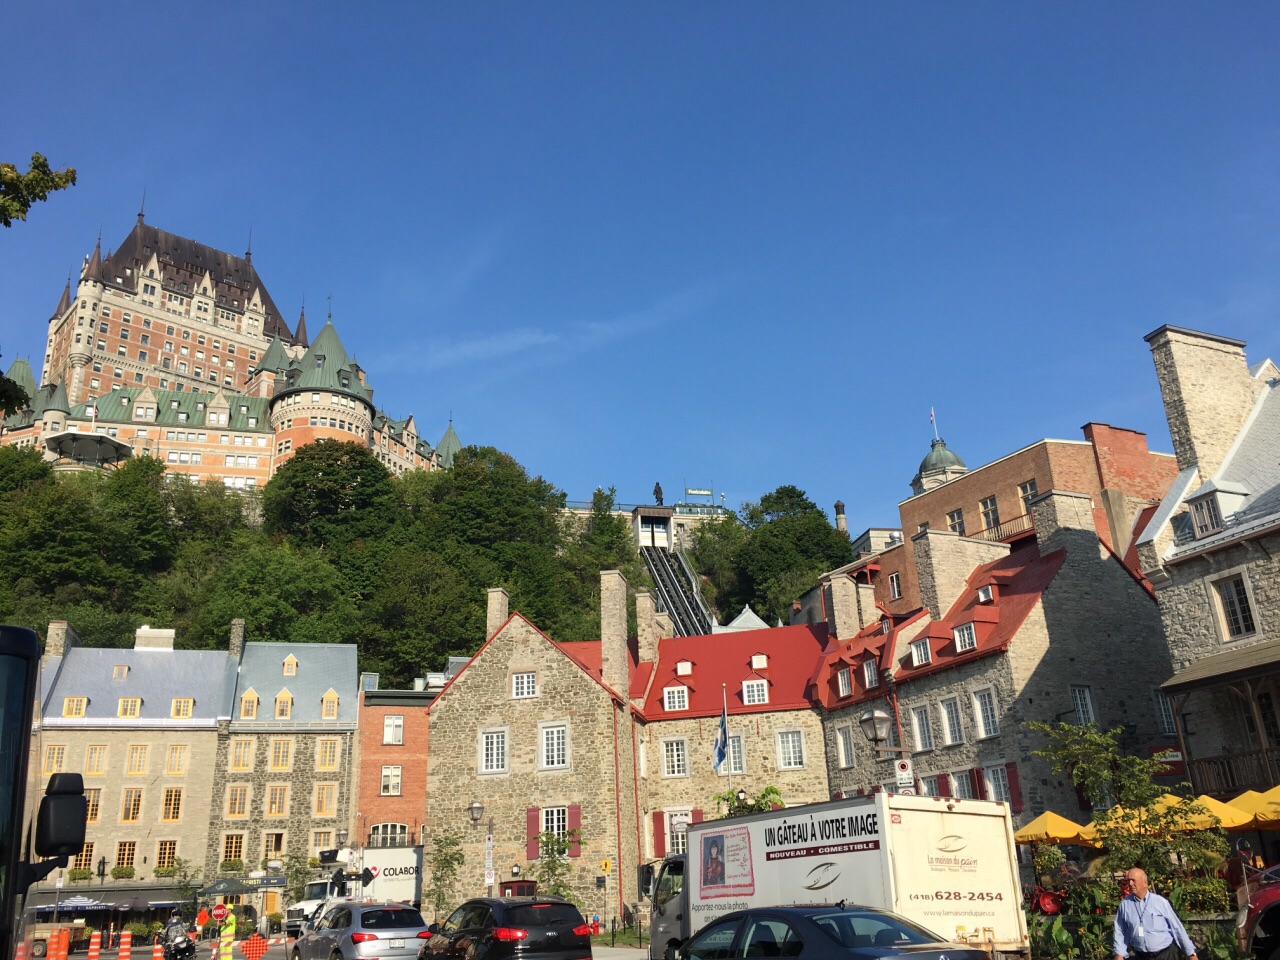 【携程攻略】魁北克市魁北克景点,加拿大最古老的(405年历史)魁北克城，在这充满浓郁欧陆色彩的魁北克…